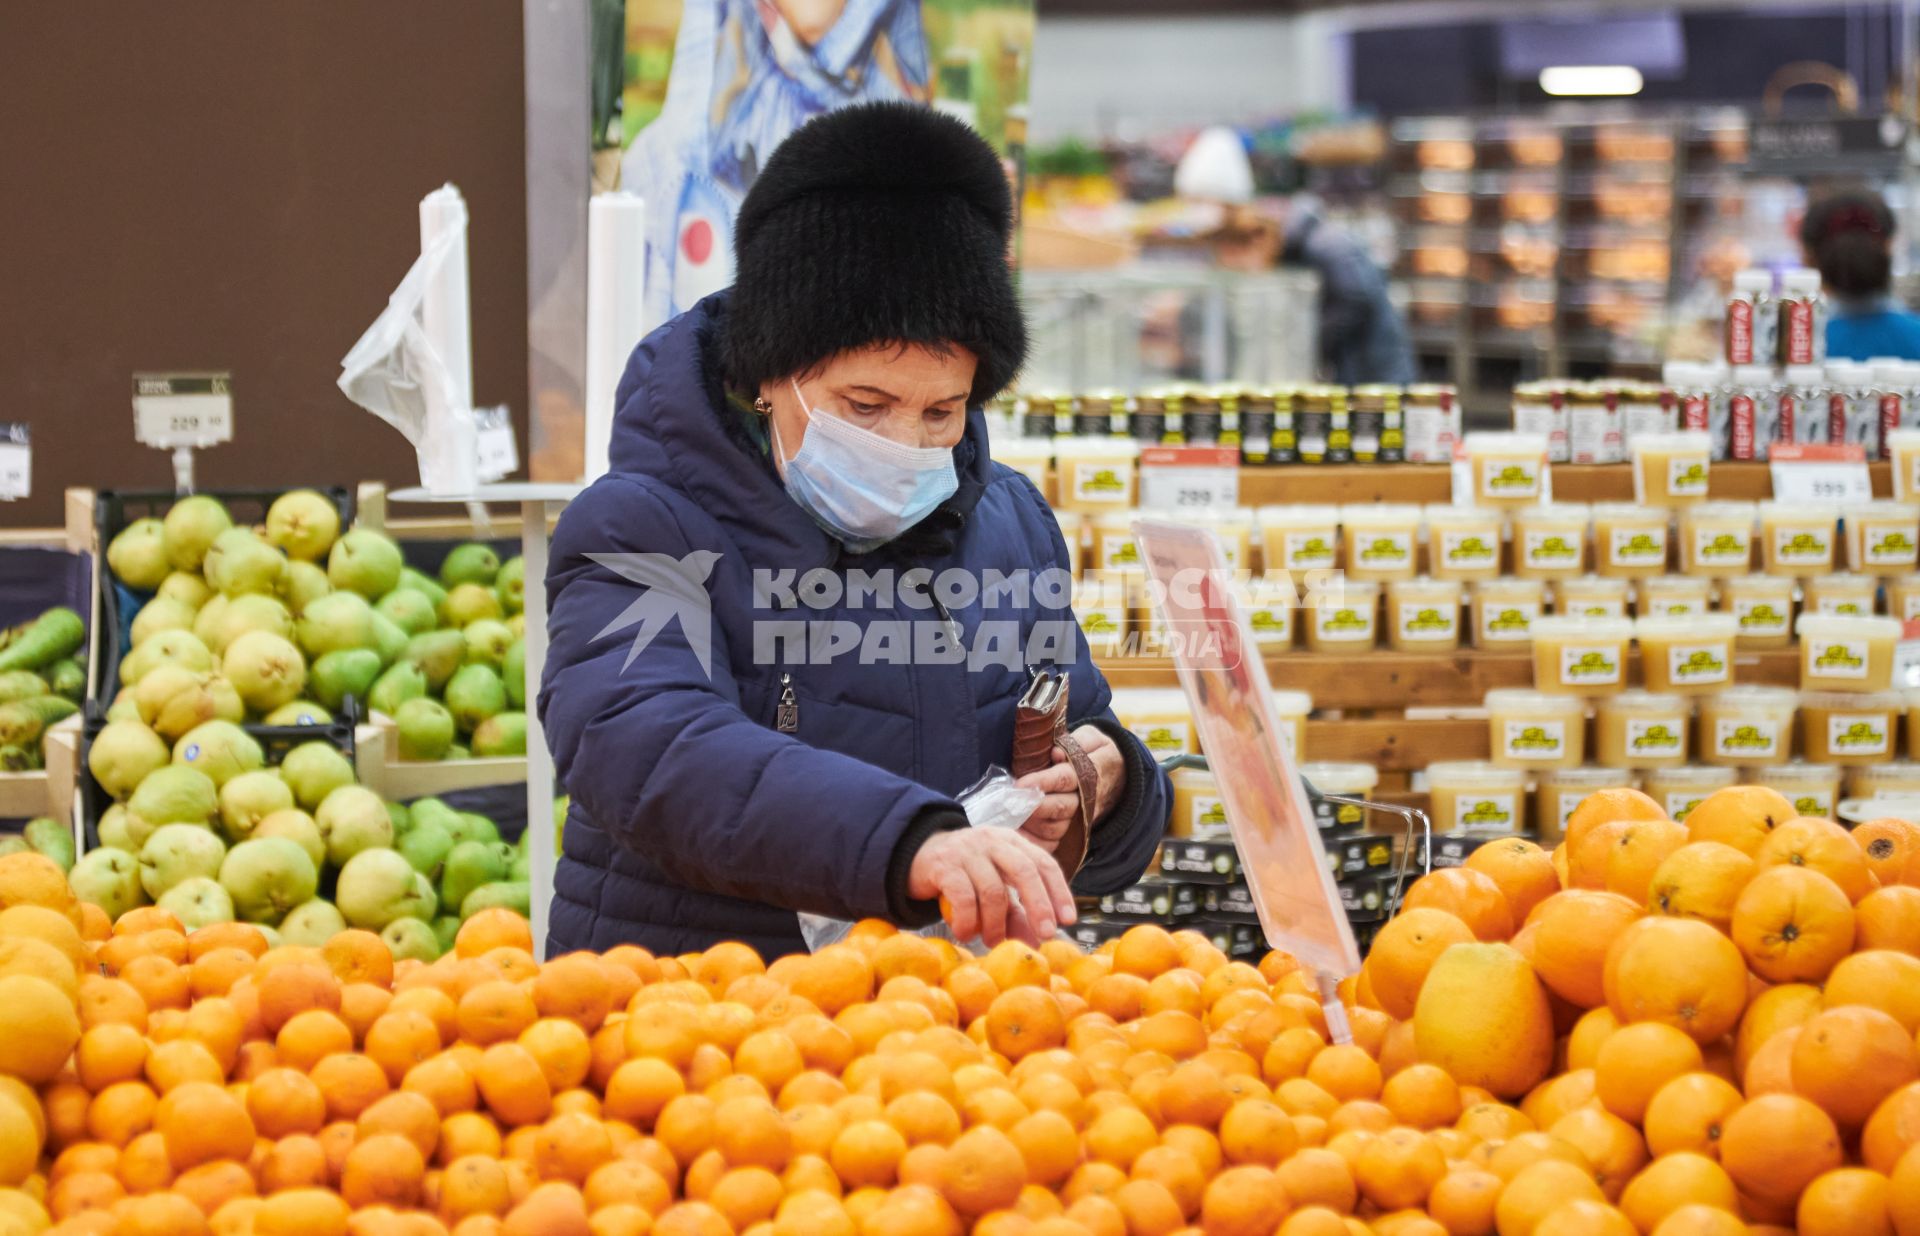 Пермь. Женщина выбирает мандарины в магазине.